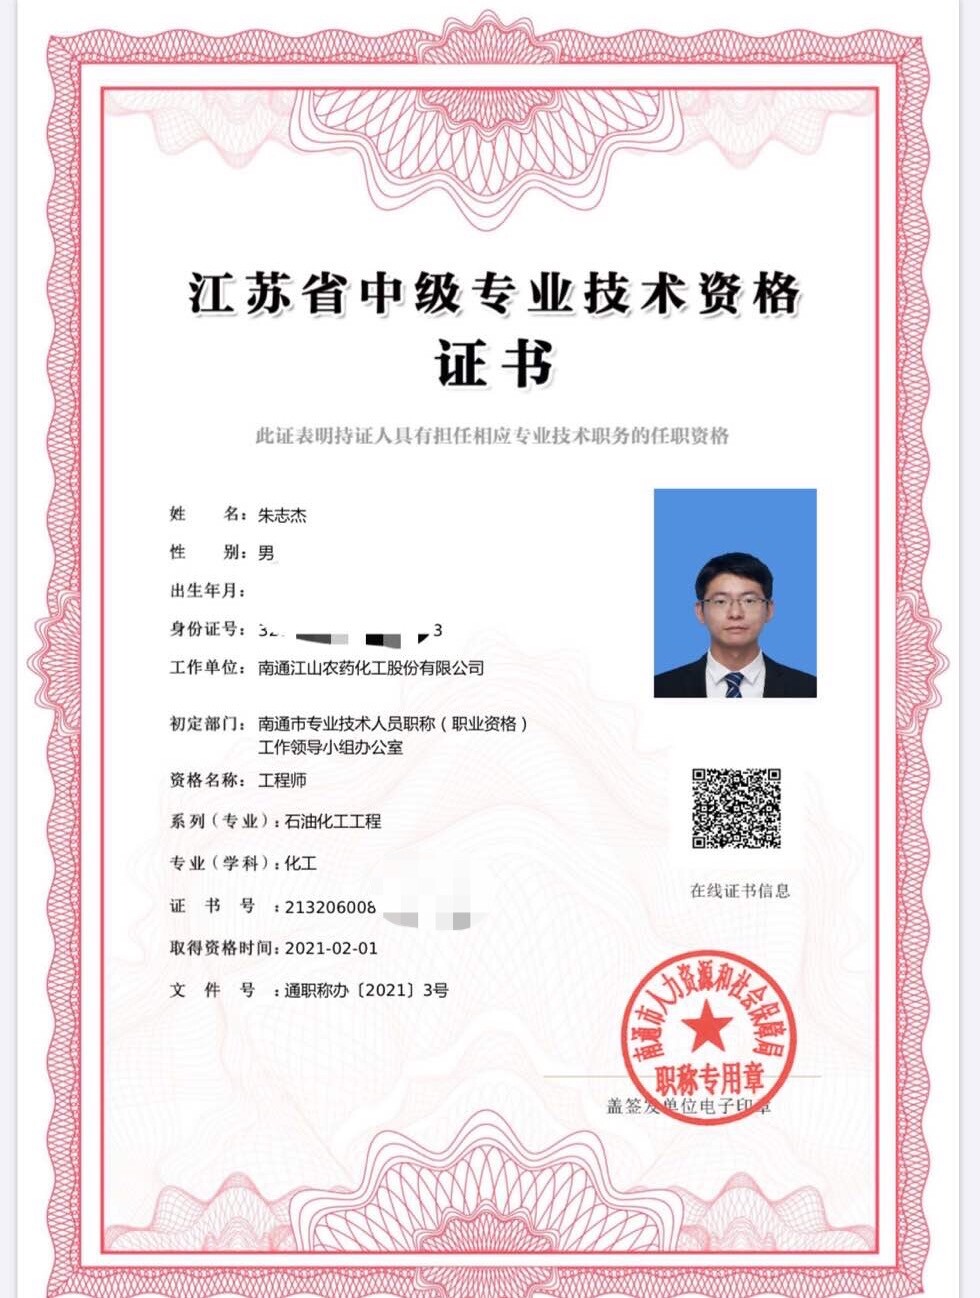 江苏统一电子职称证书制式 首张新版电子证书南通发出